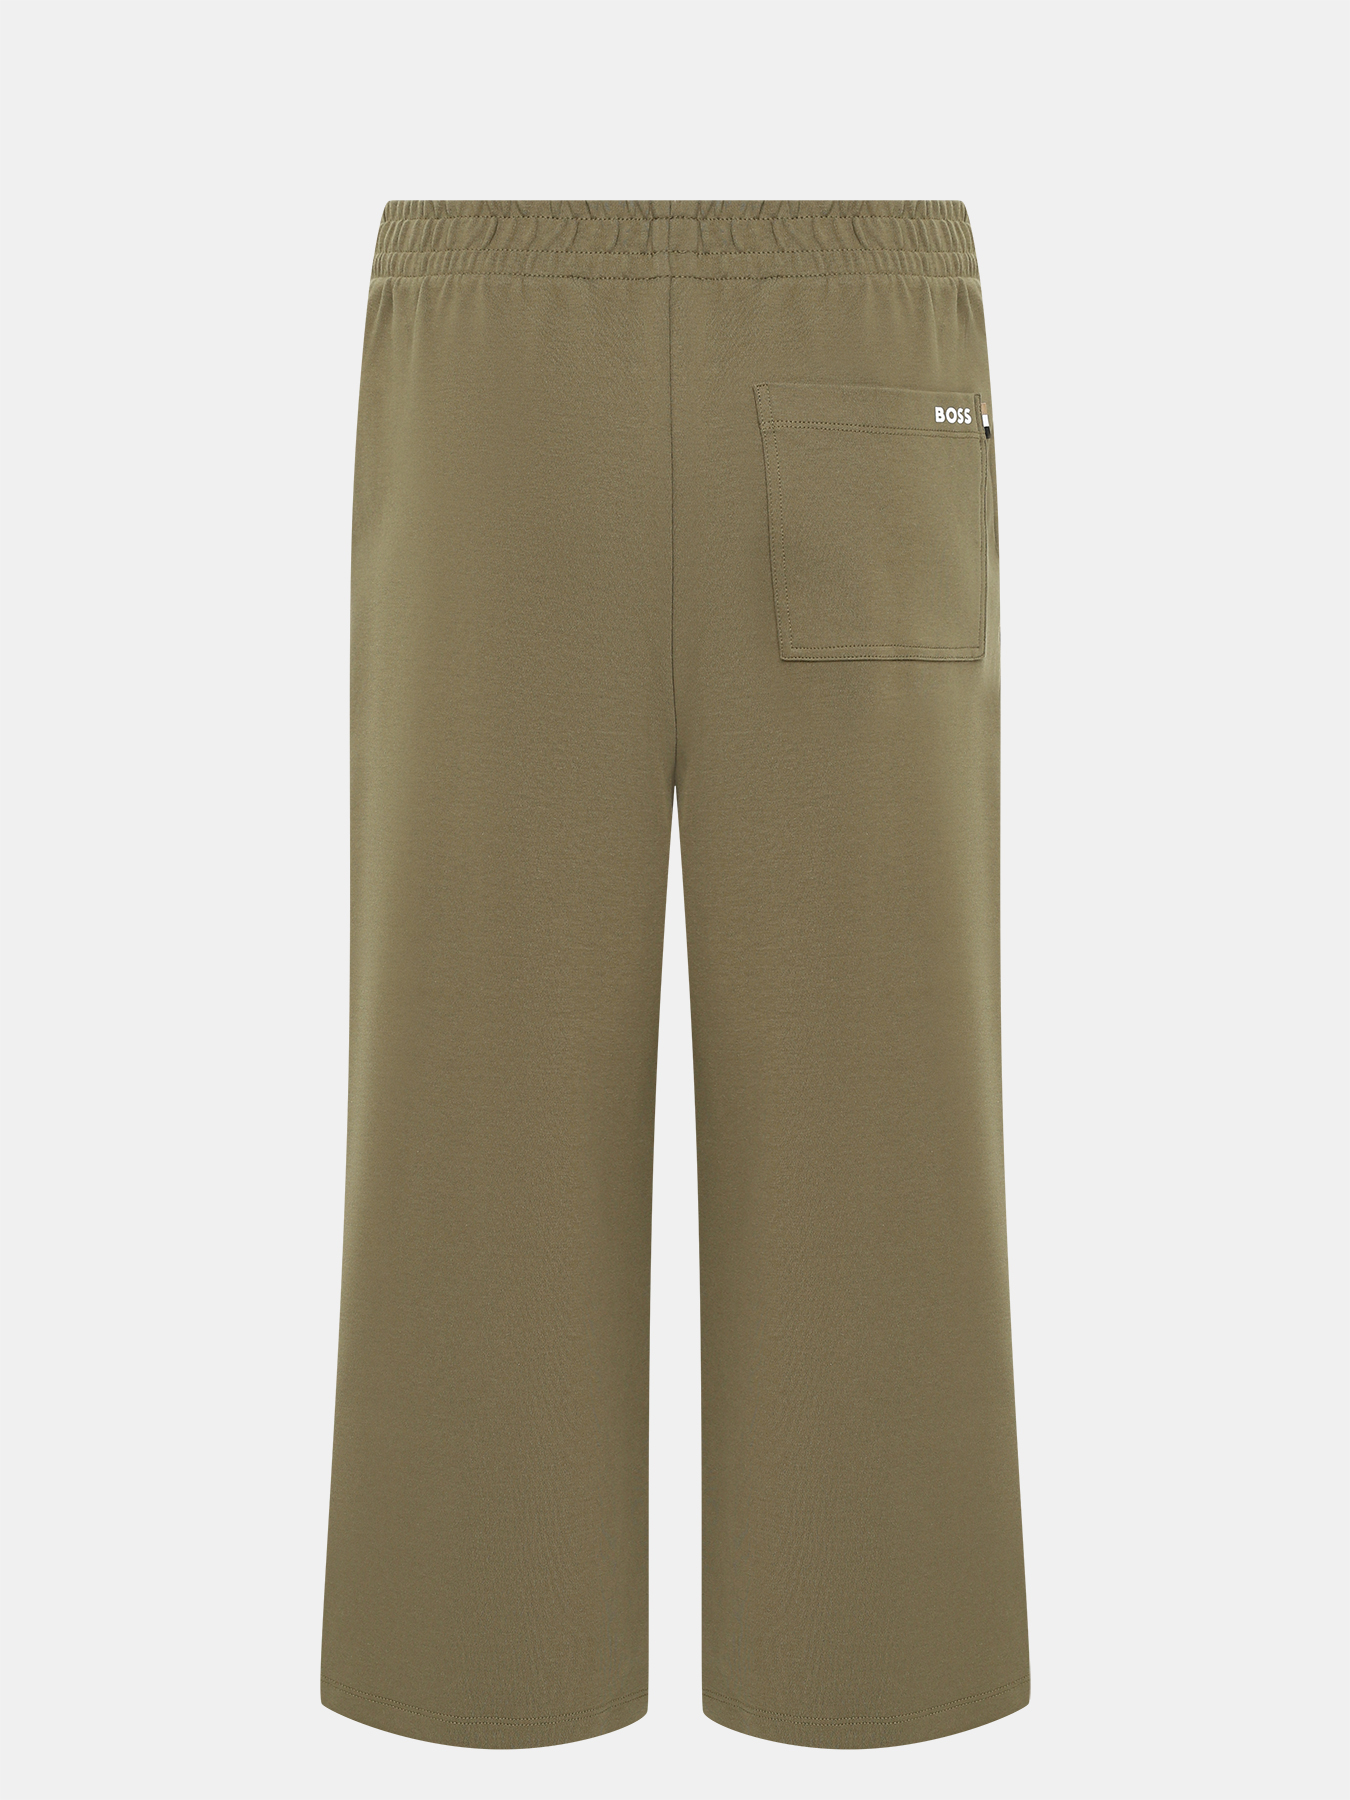 Спортивные брюки Enatea BOSS 414132-044, цвет хаки, размер 46-48 - фото 2